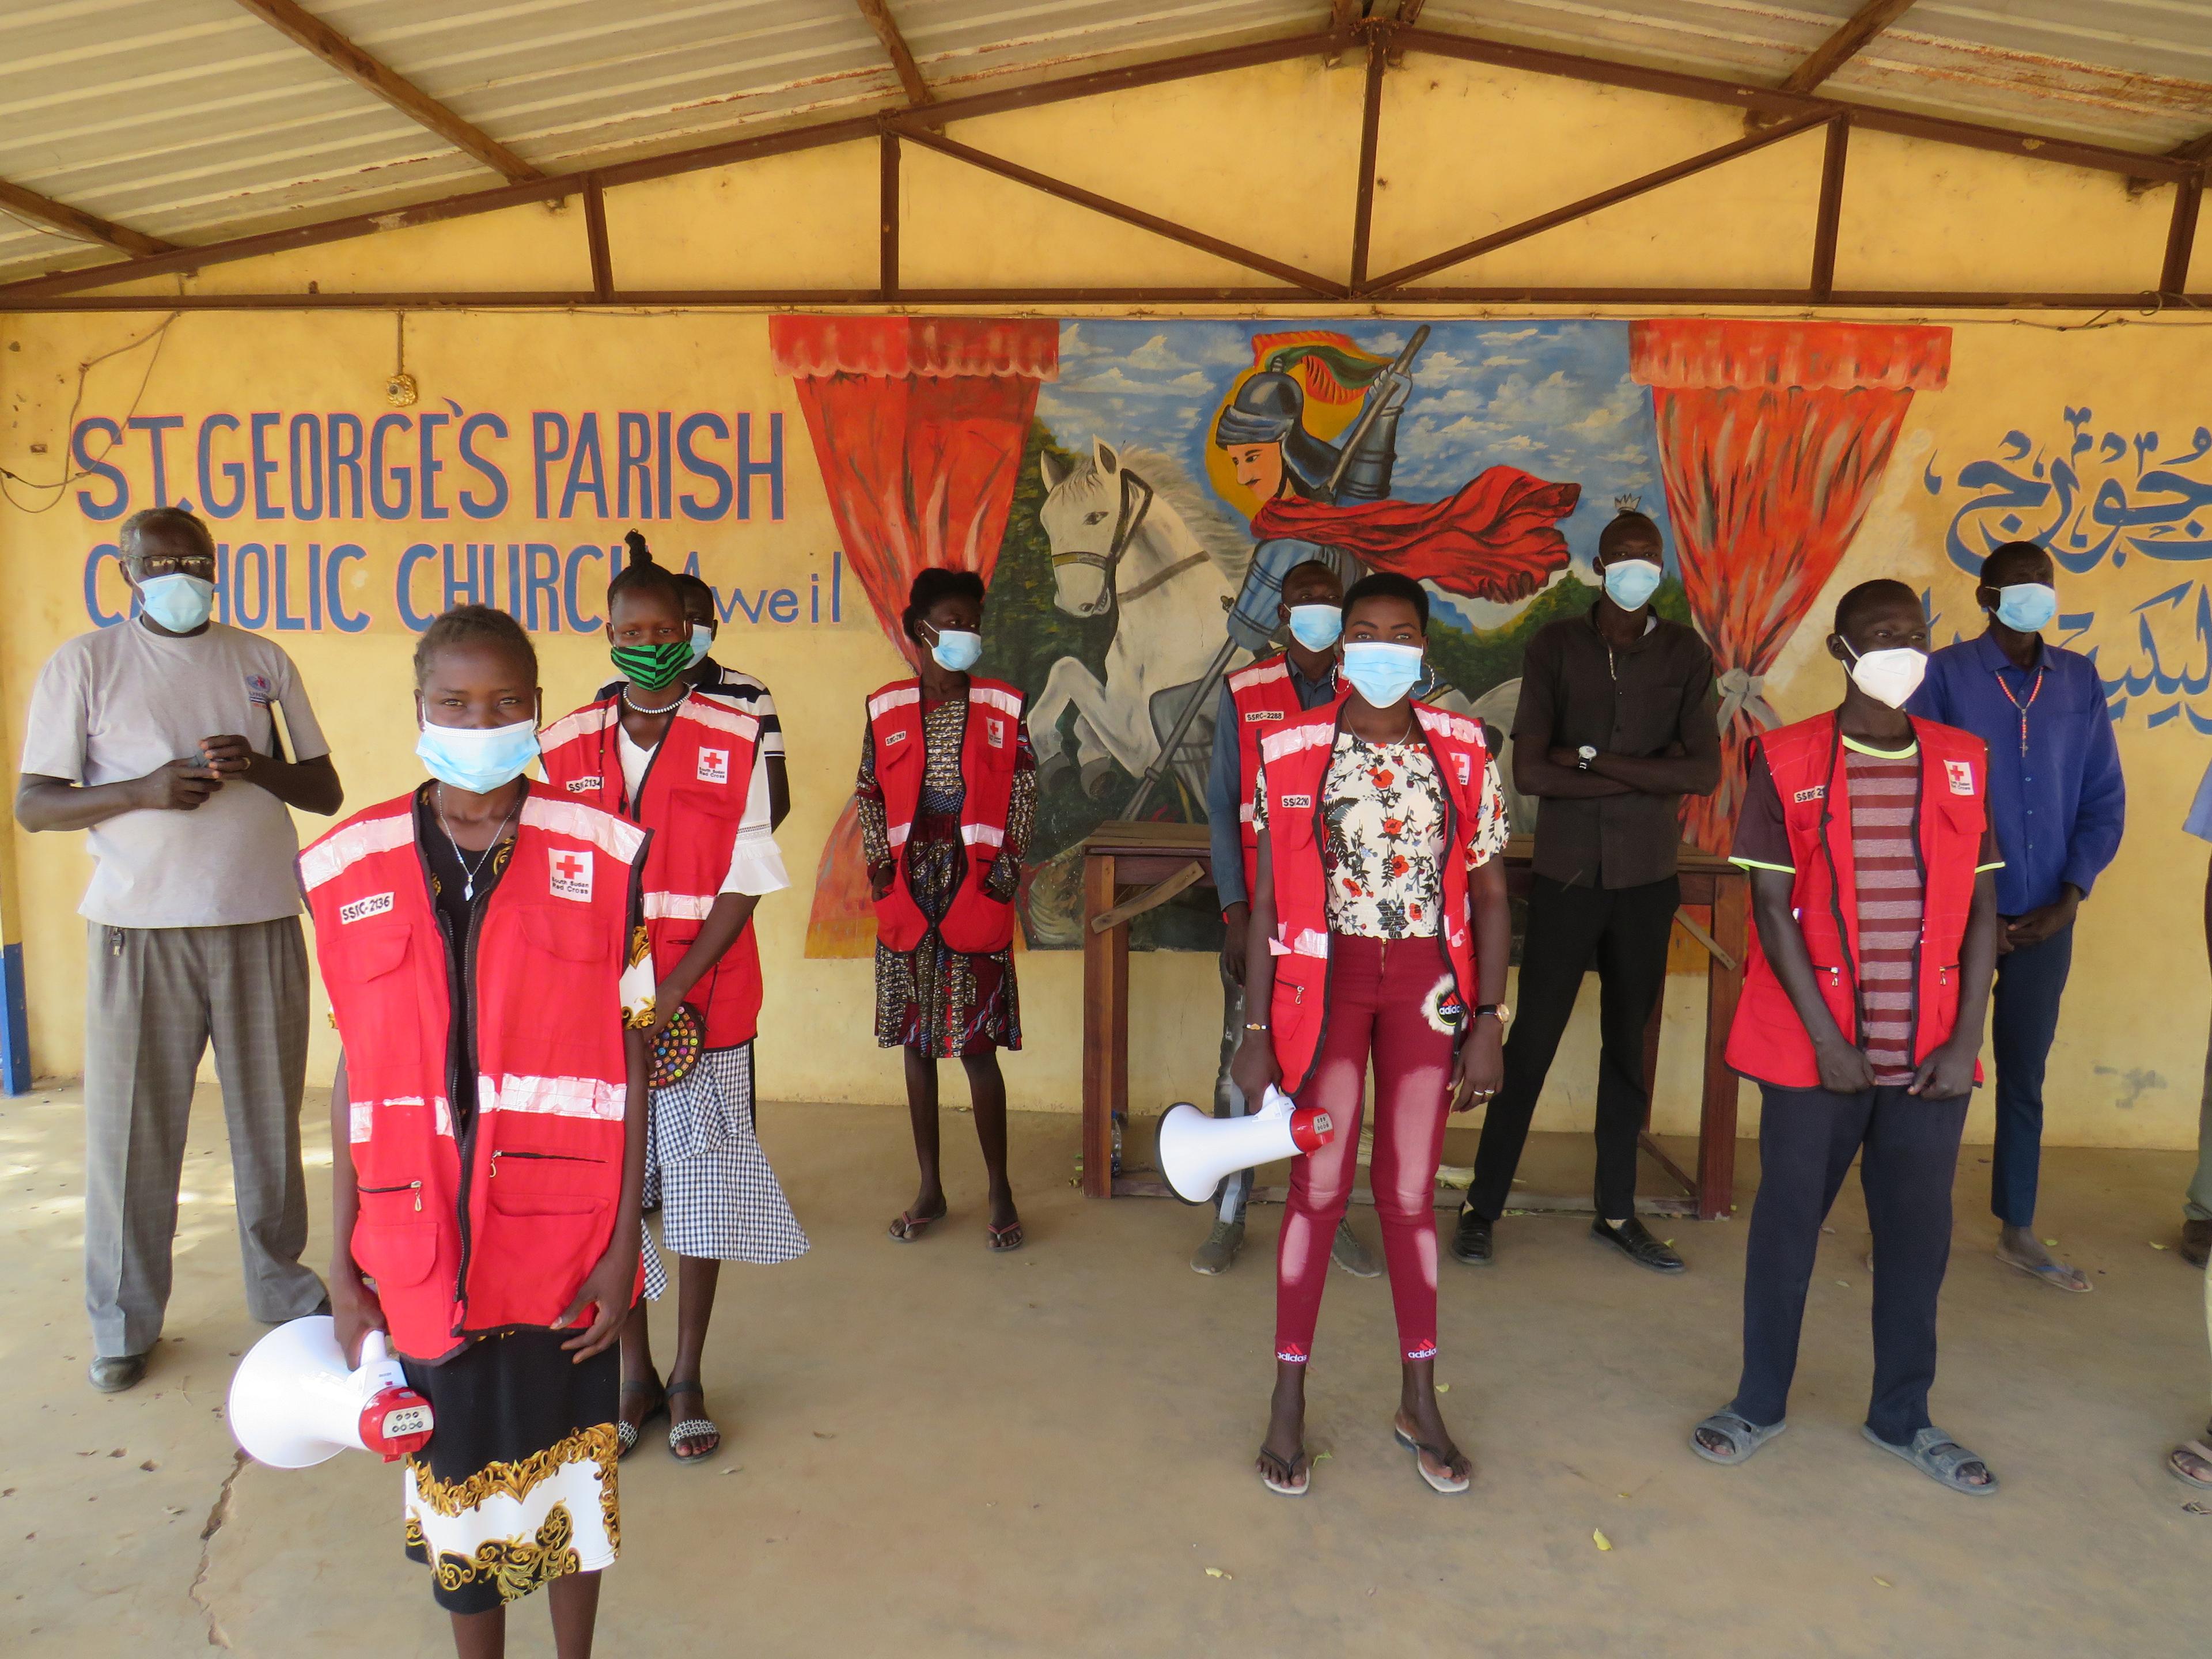 Auf dem Bild sind Rotkreuz-Freiwillige, die voneinander Abstand haben und in die Kamera schauen in einem Gebäude zu sehen. Sechs von ihnen tragen eine rote Weste mit dem Emblem des Roten Kreuzes.